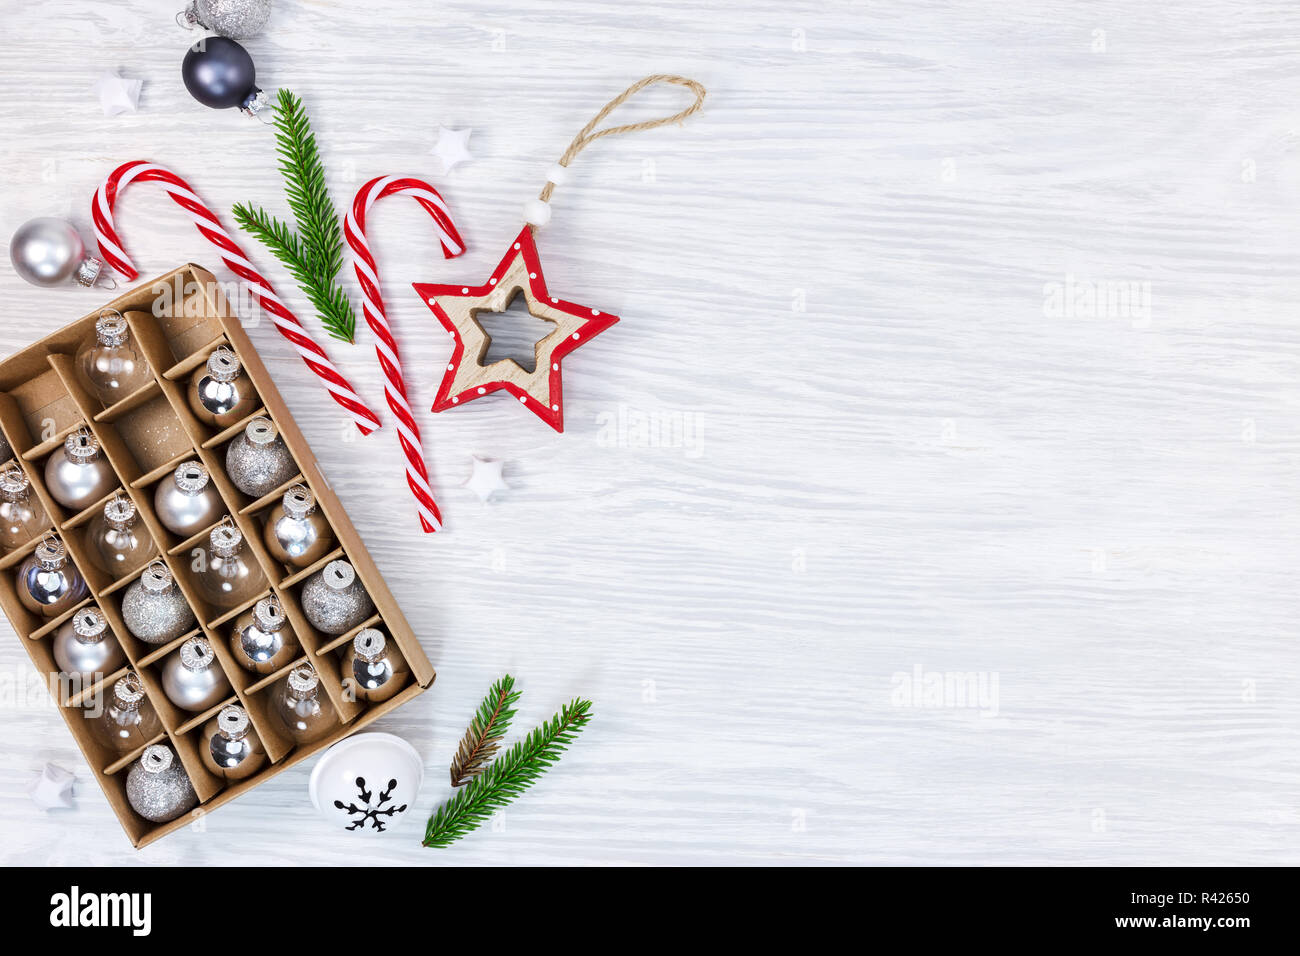 Weihnachten Dekorationen auf Holz- Hintergrund mit Fir Tree Branches, Stern, Candy Cane und Box mit Kugeln aus Glas Stockfoto